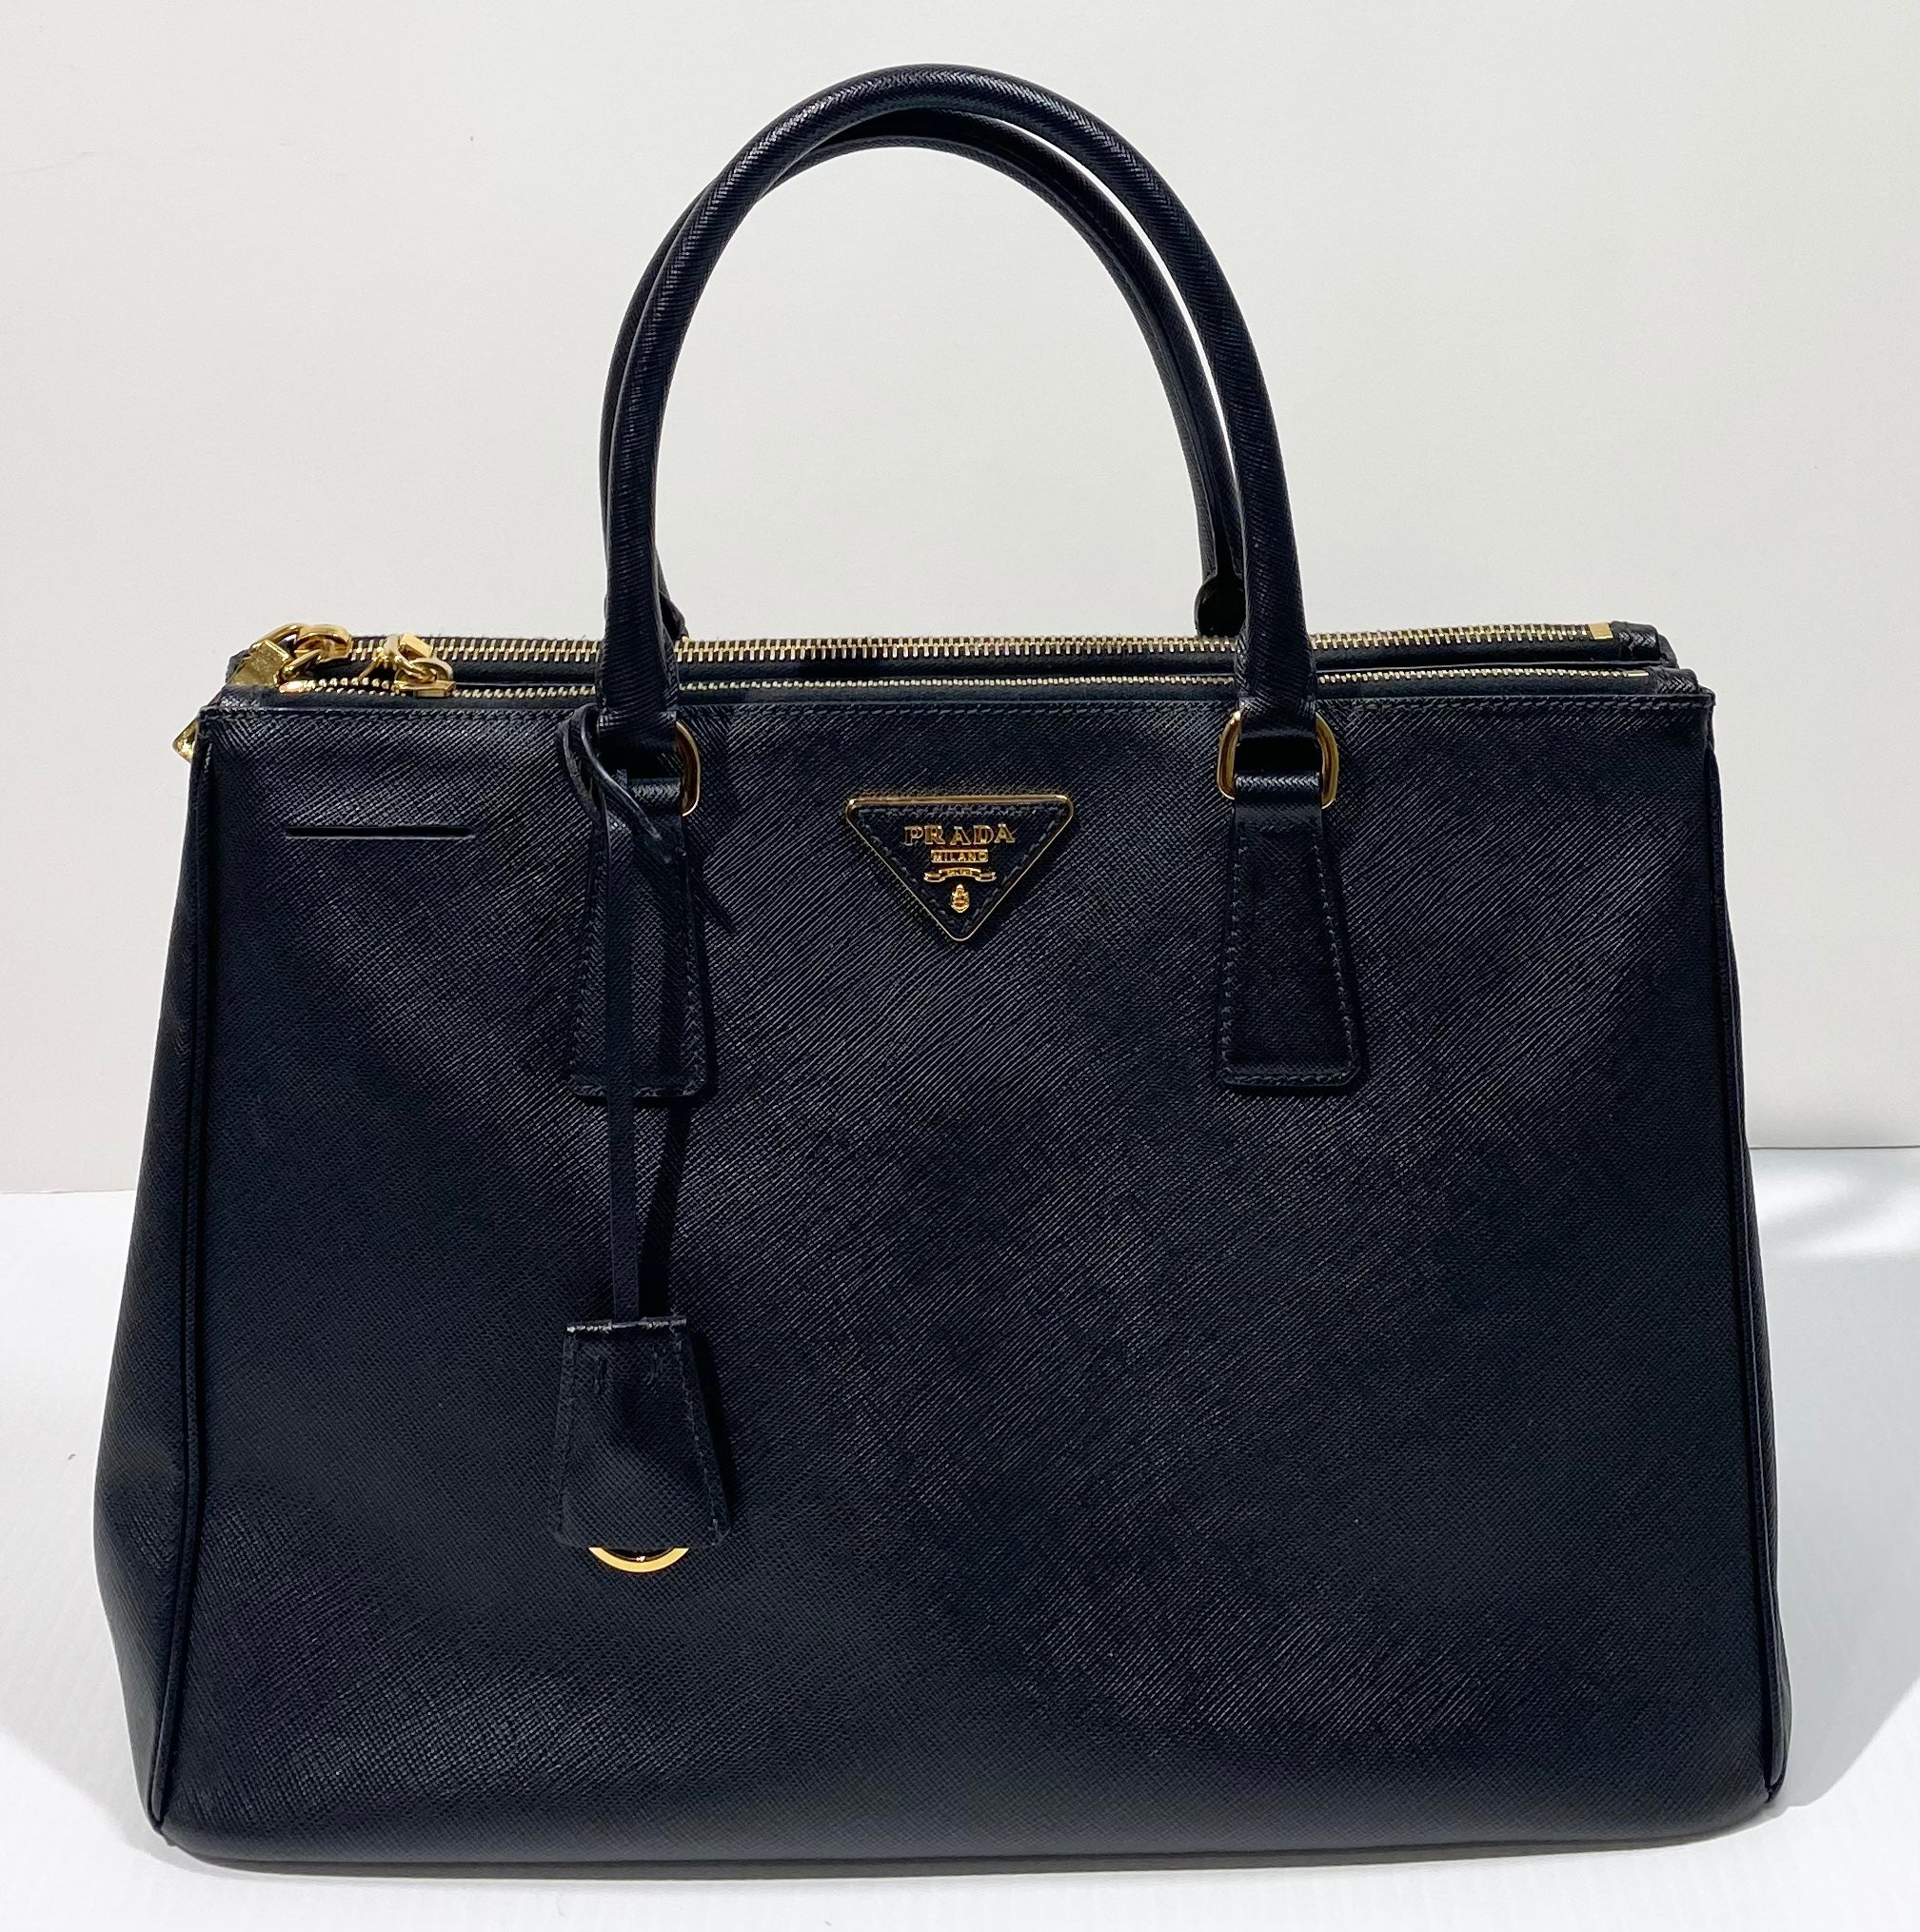 Authentic Prada Galleria Saffiano Leather Bag - Excellent